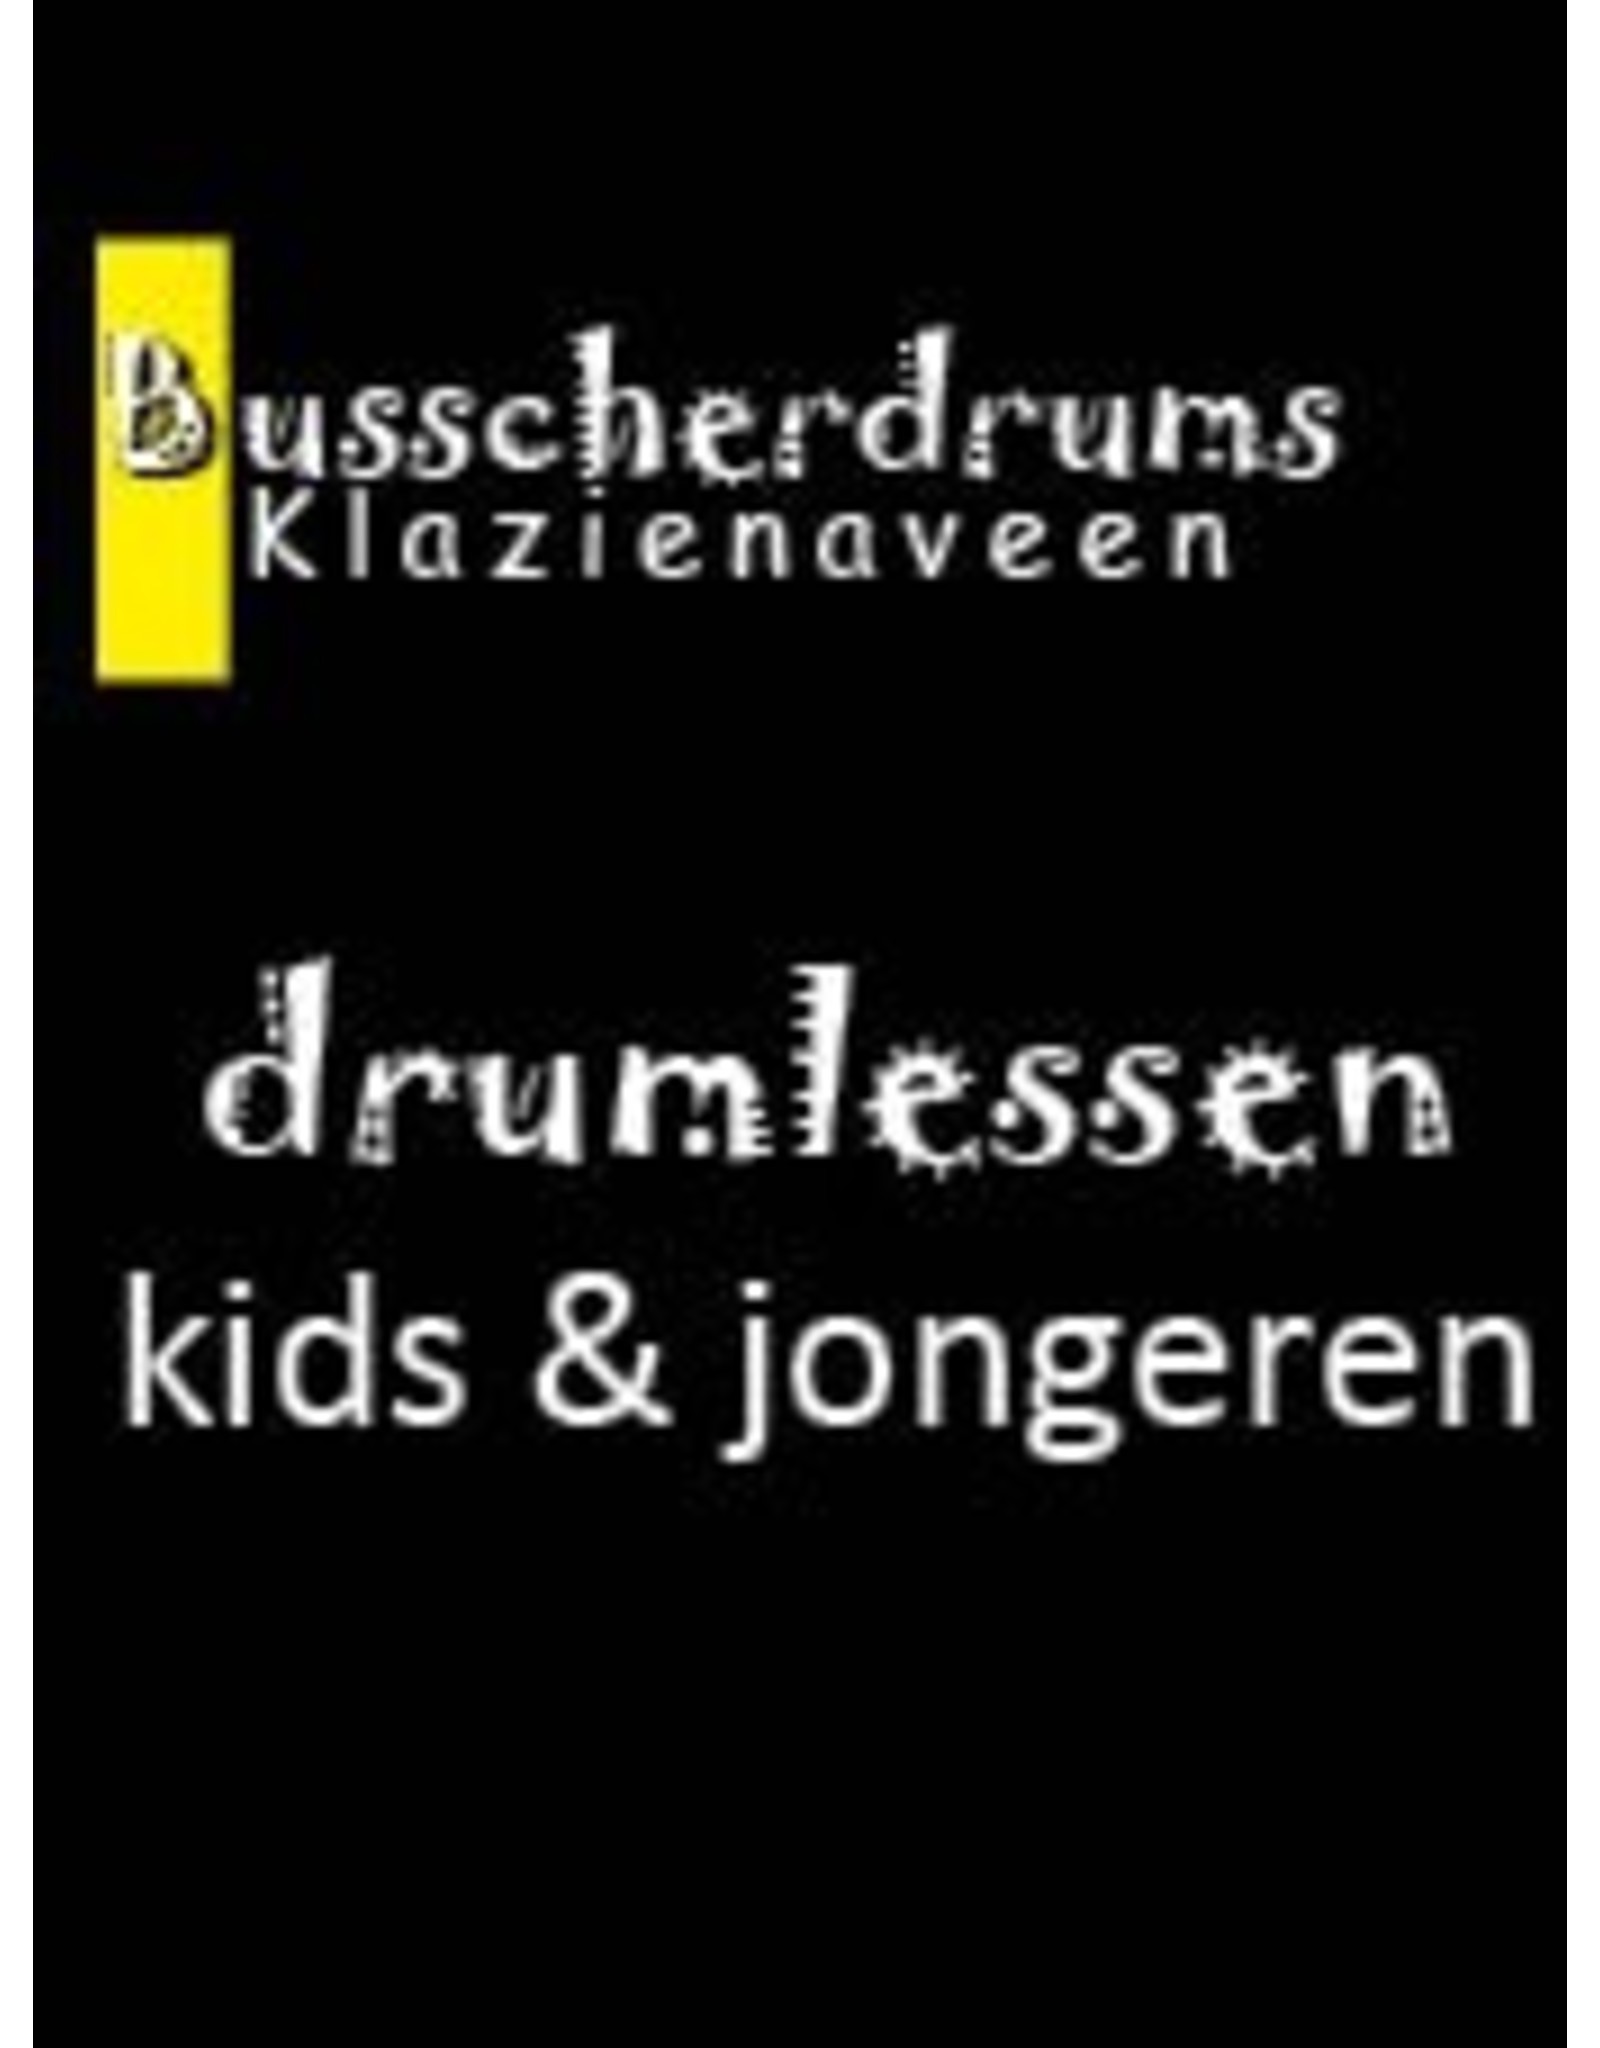 Busscherdrums Drum Lessons Karte 25 x 30 Minuten Unterricht in 2 Wochen 3 610 Jugendliche